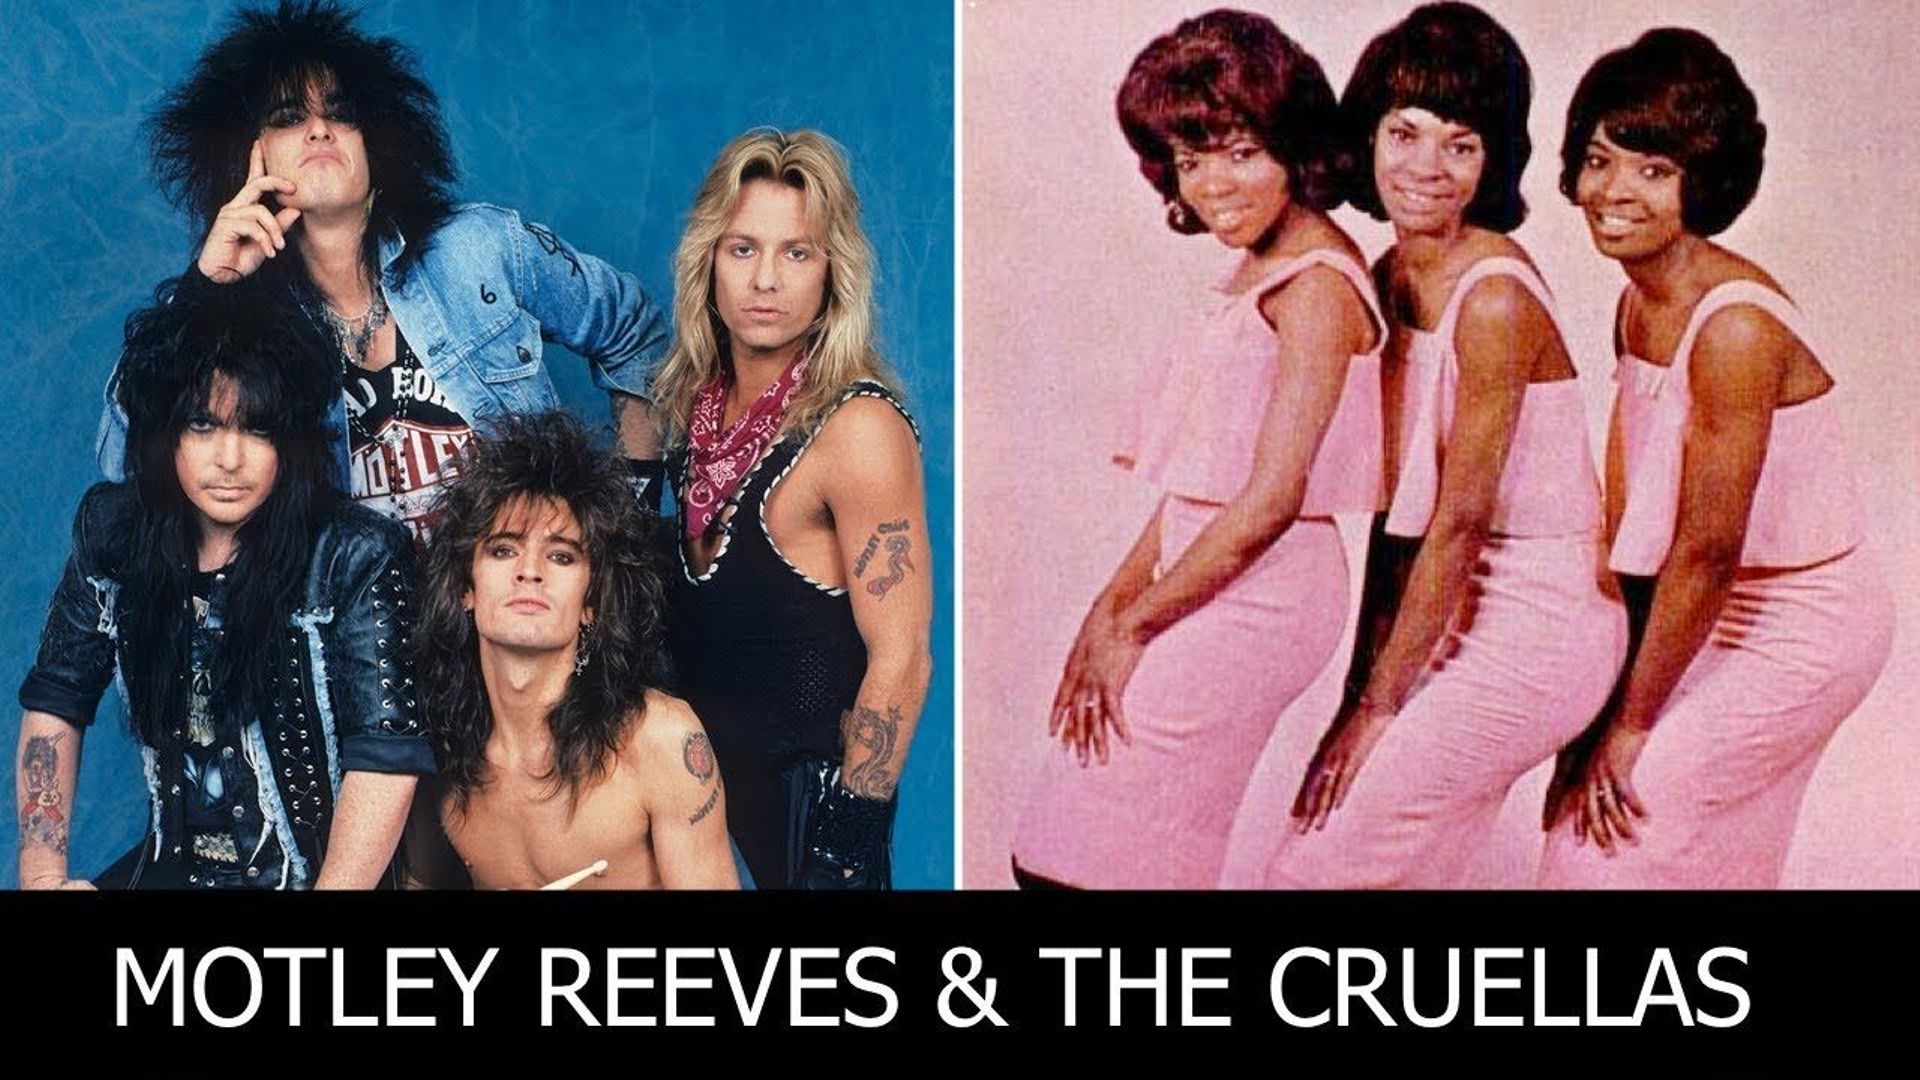 Quand Mötley Crüe rencontre la Motown, cela donne un véritable hymne festif